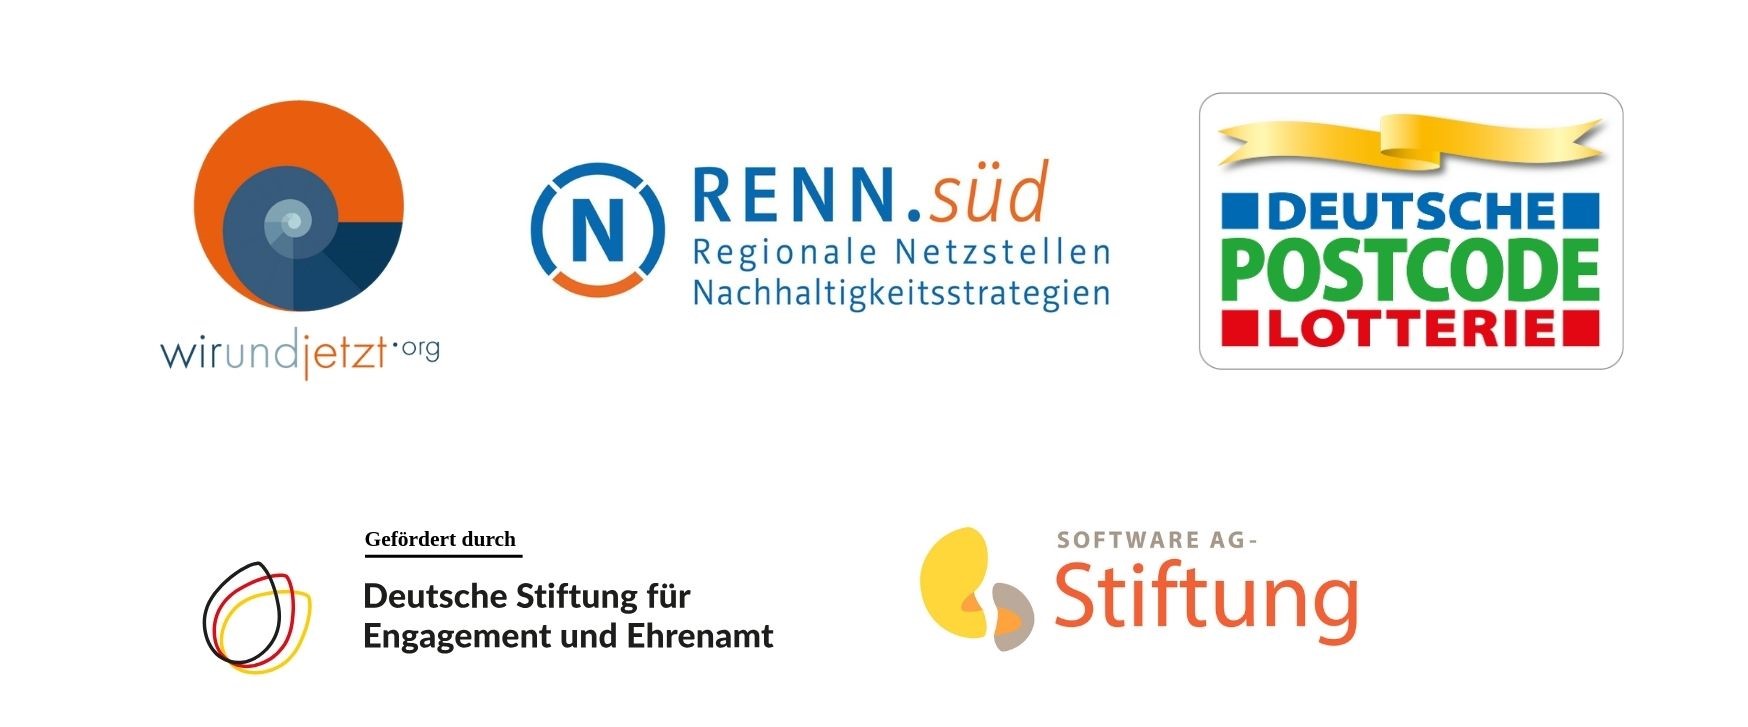 Logo wirundjetzt e.V., Logo RENN.süd, Logo Deutsche Postcode Lotterie, Logo Deutsche Stiftung für Engagement und Ehrenamt, Logo Software AG-Stiftung 